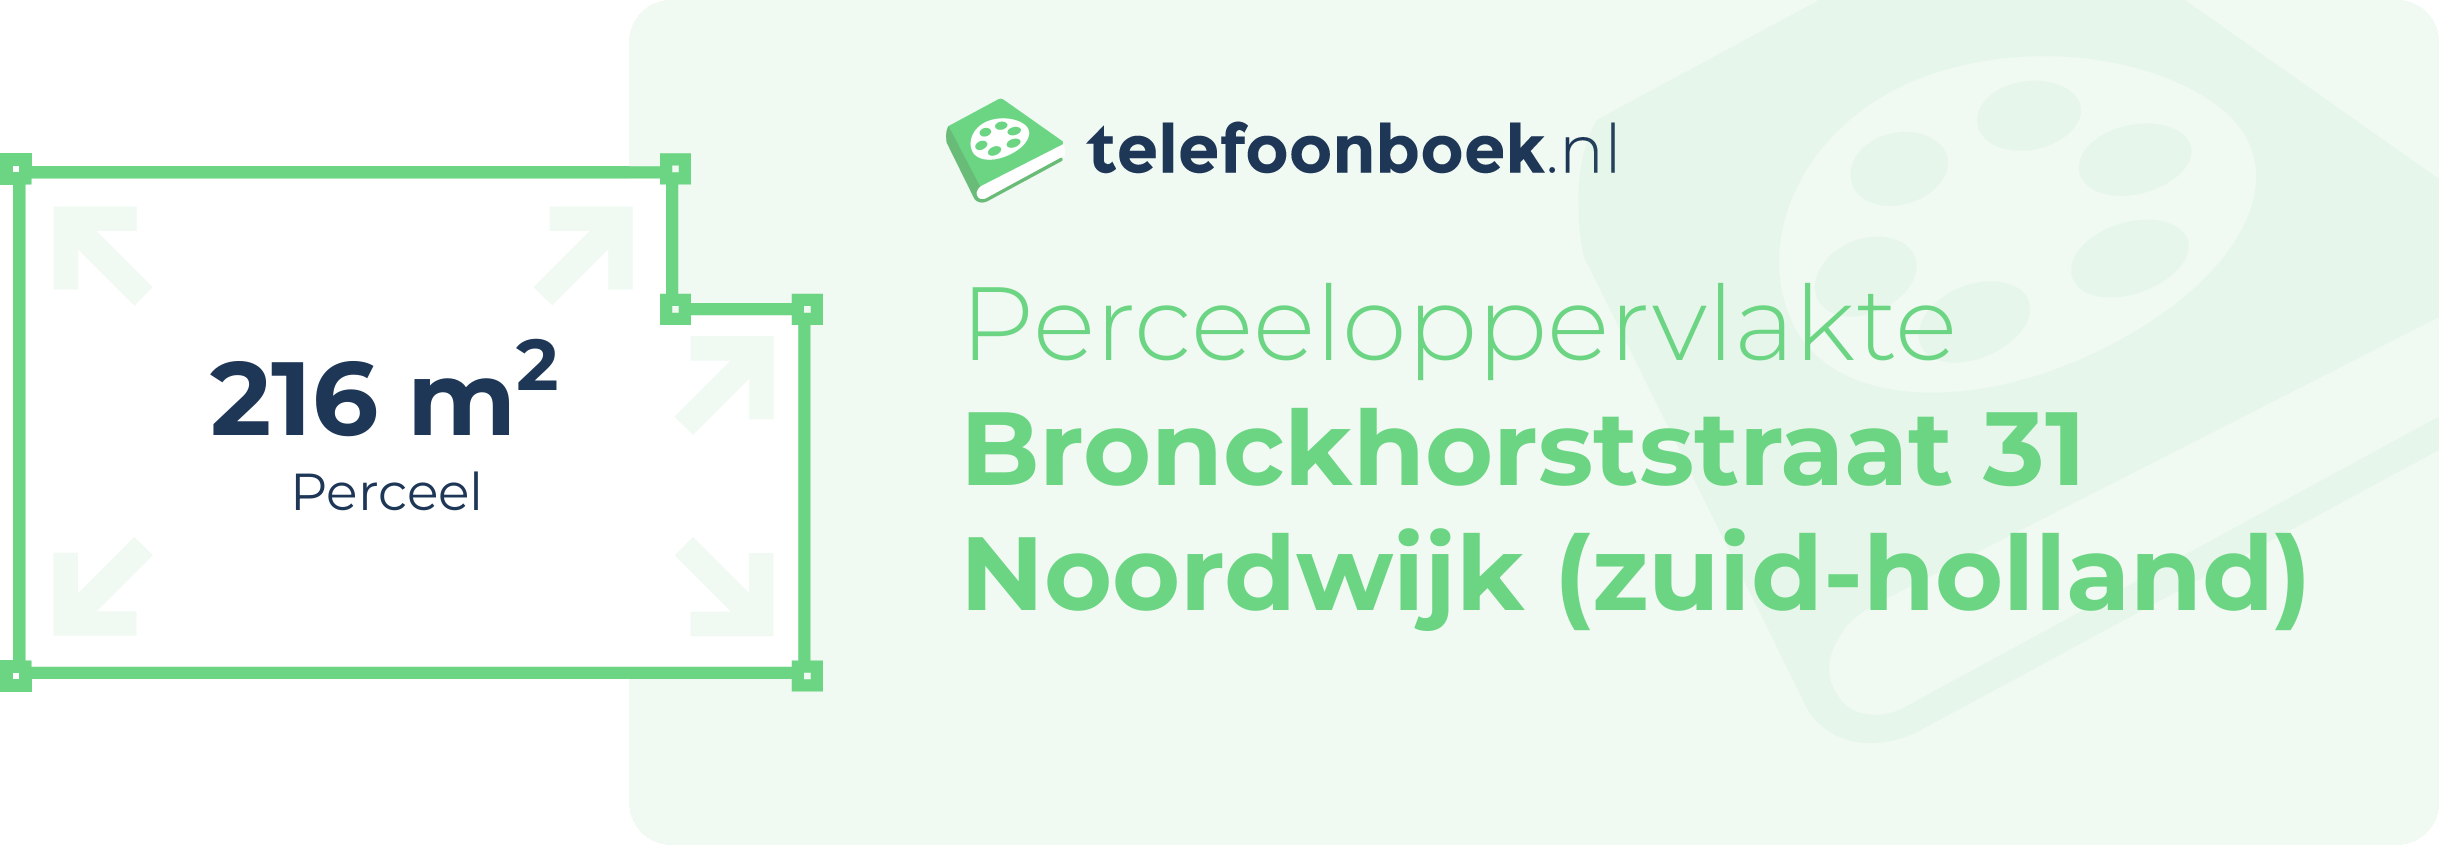 Perceeloppervlakte Bronckhorststraat 31 Noordwijk (Zuid-Holland)